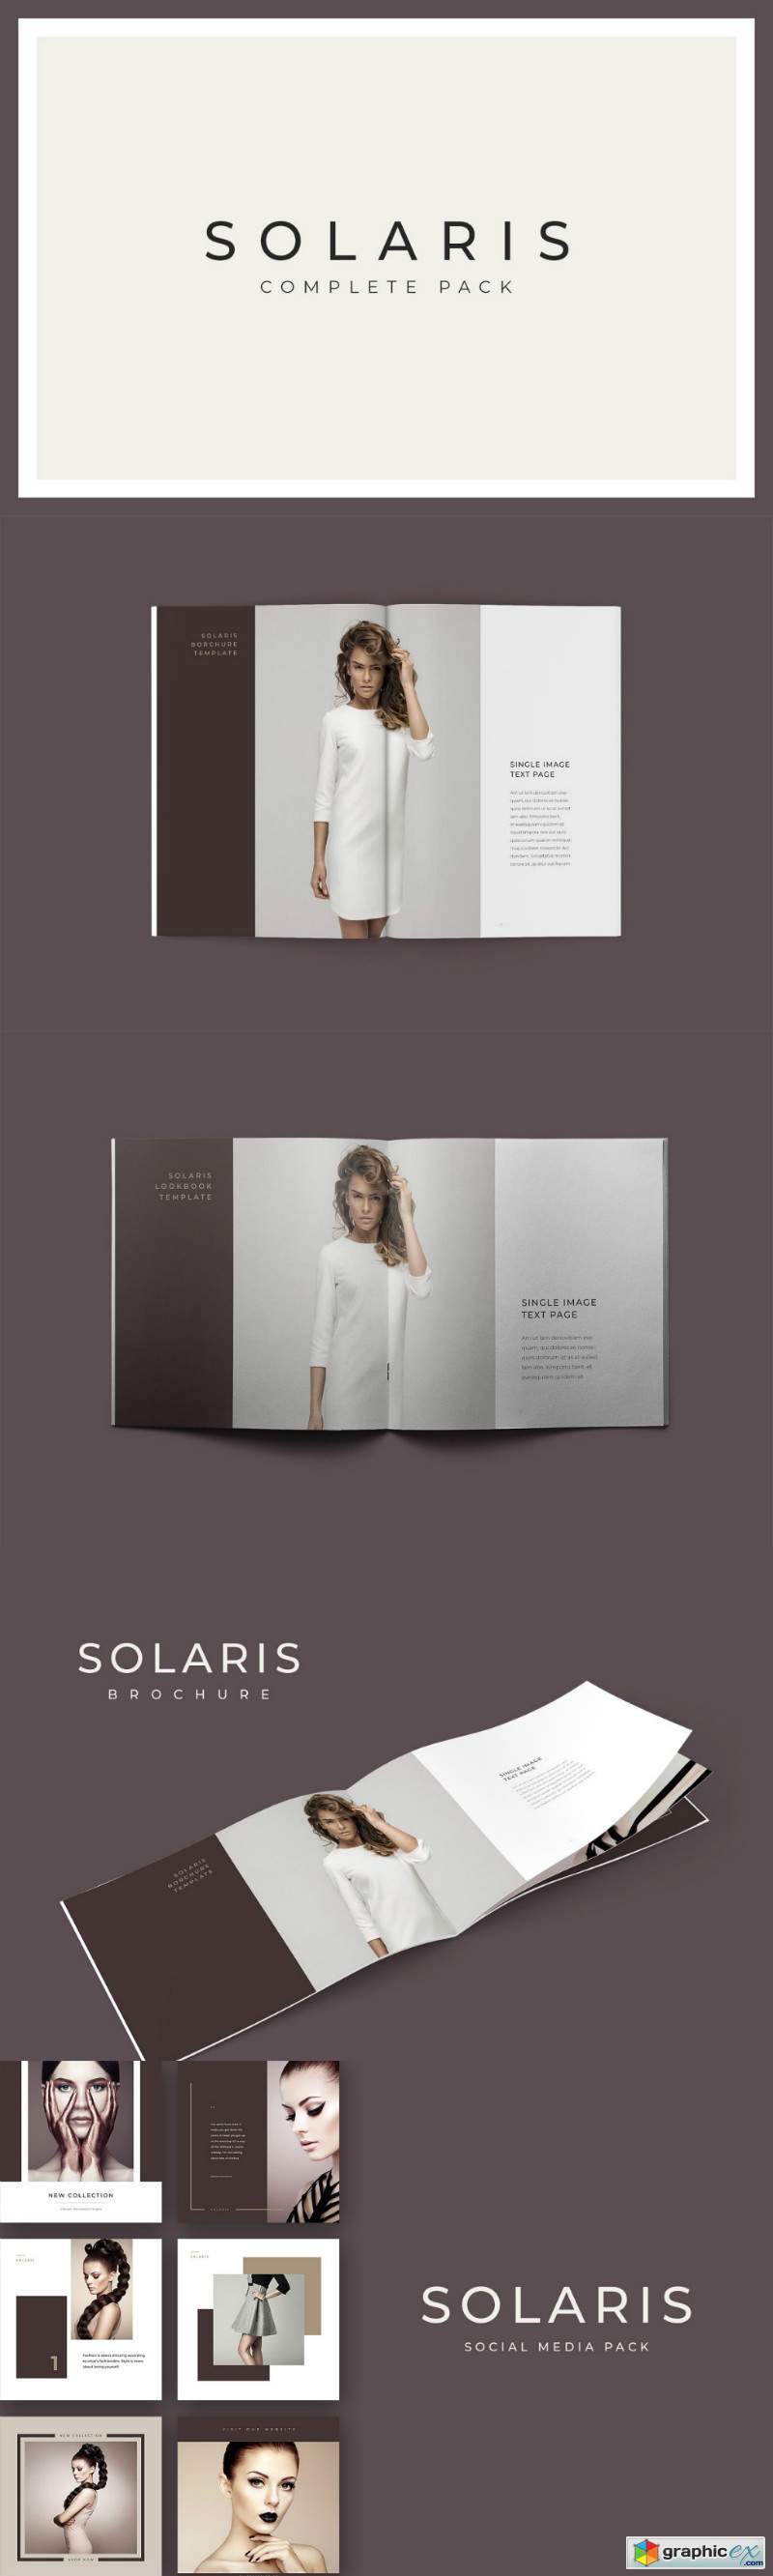 Solaris Complete Pack